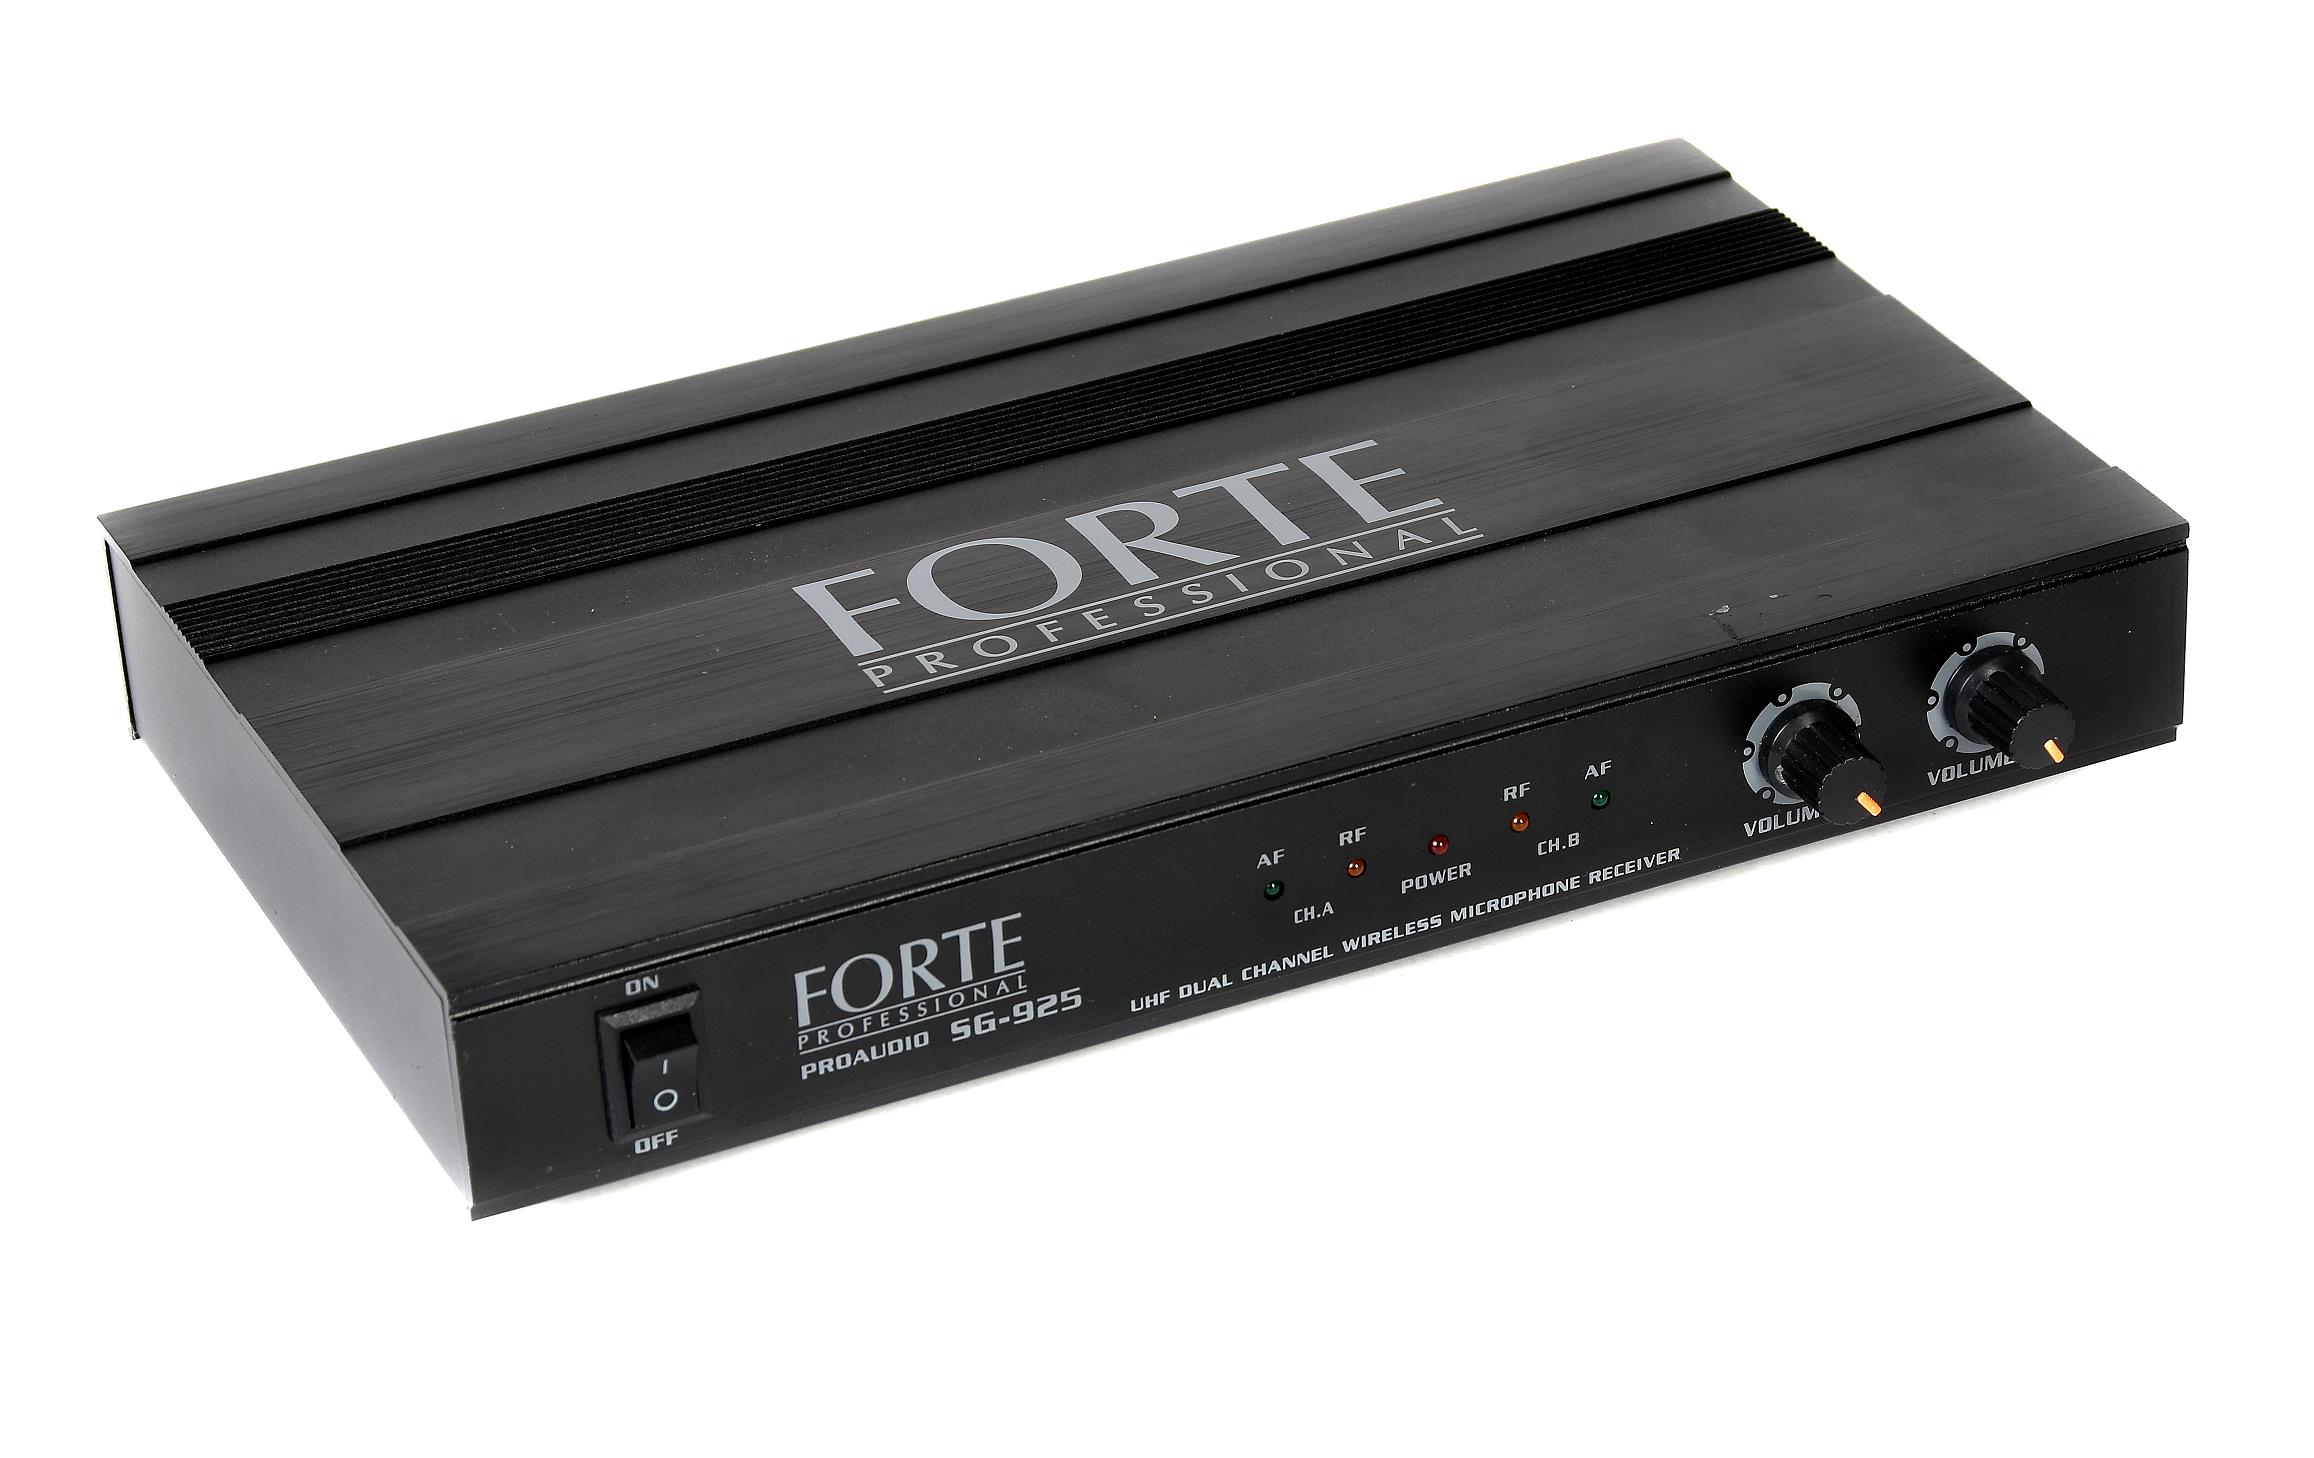 Детальная картинка товара Forte SG-925HH в магазине Музыкальная Тема